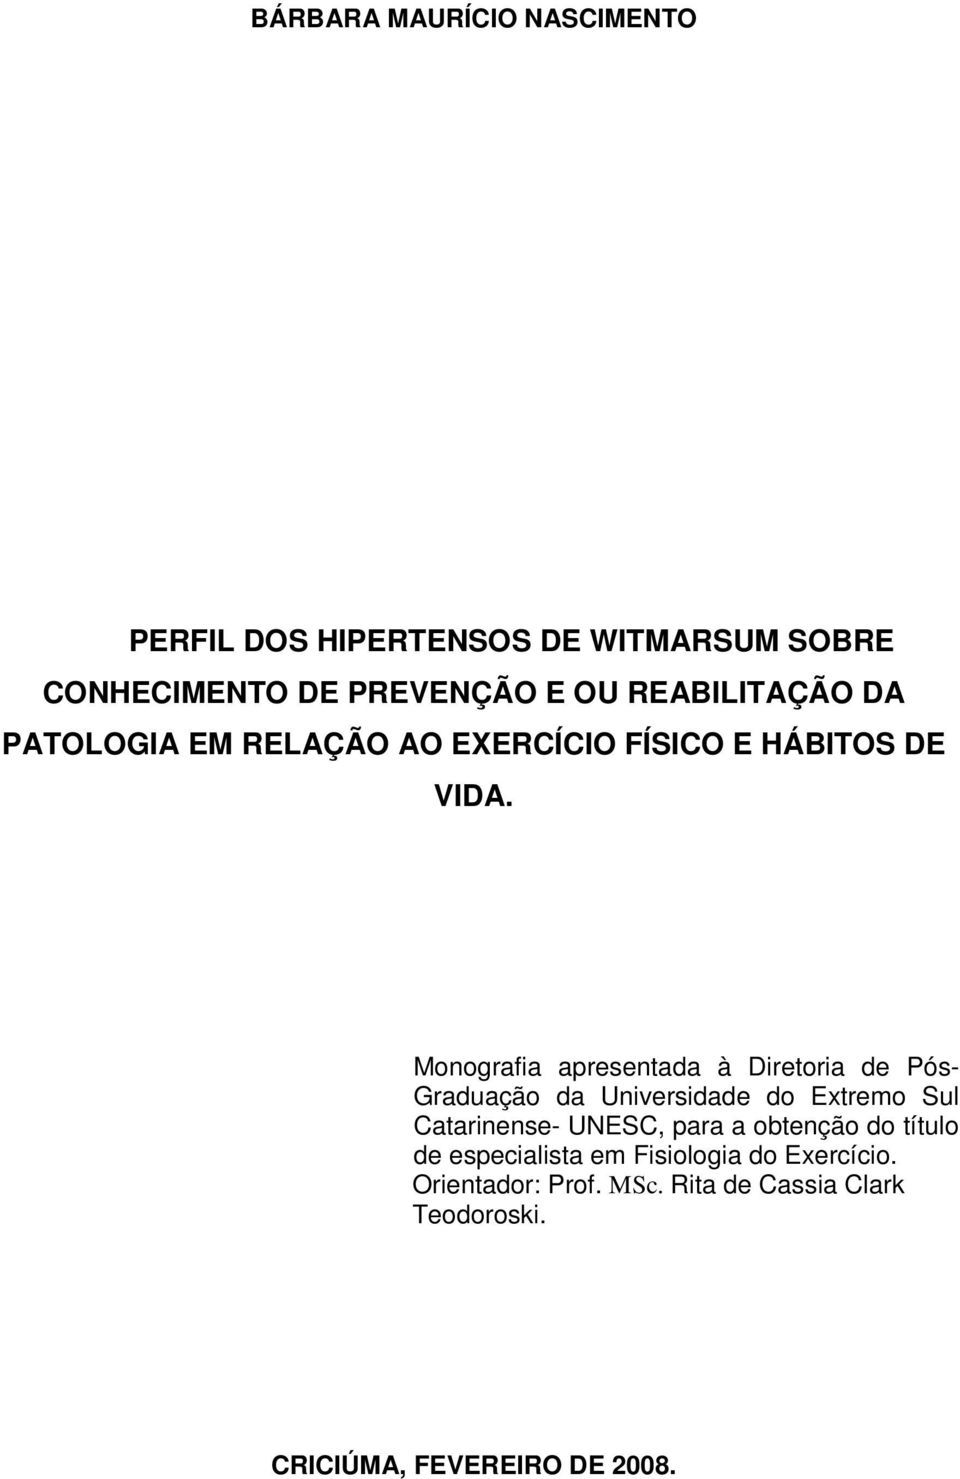 Monografia apresentada à Diretoria de Pós- Graduação da Universidade do Extremo Sul Catarinense- UNESC, para